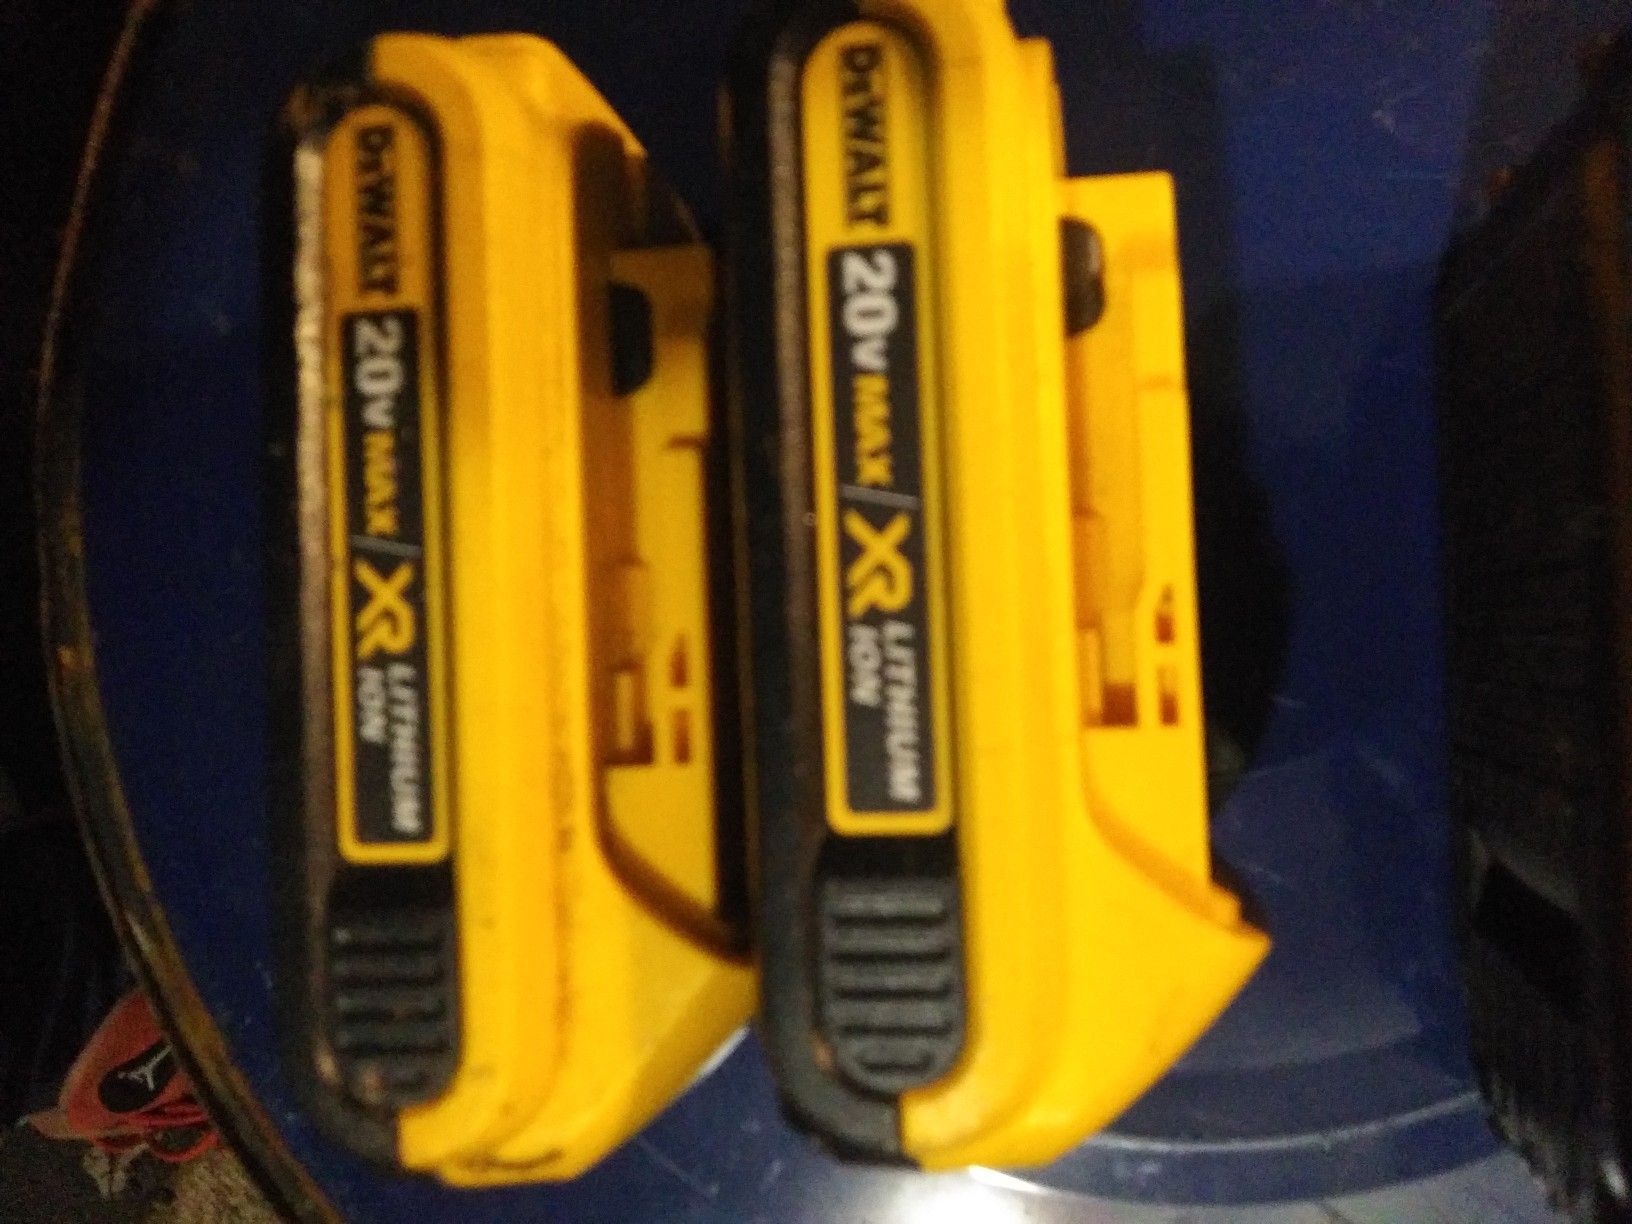 Dewalt 20v xrp batterys